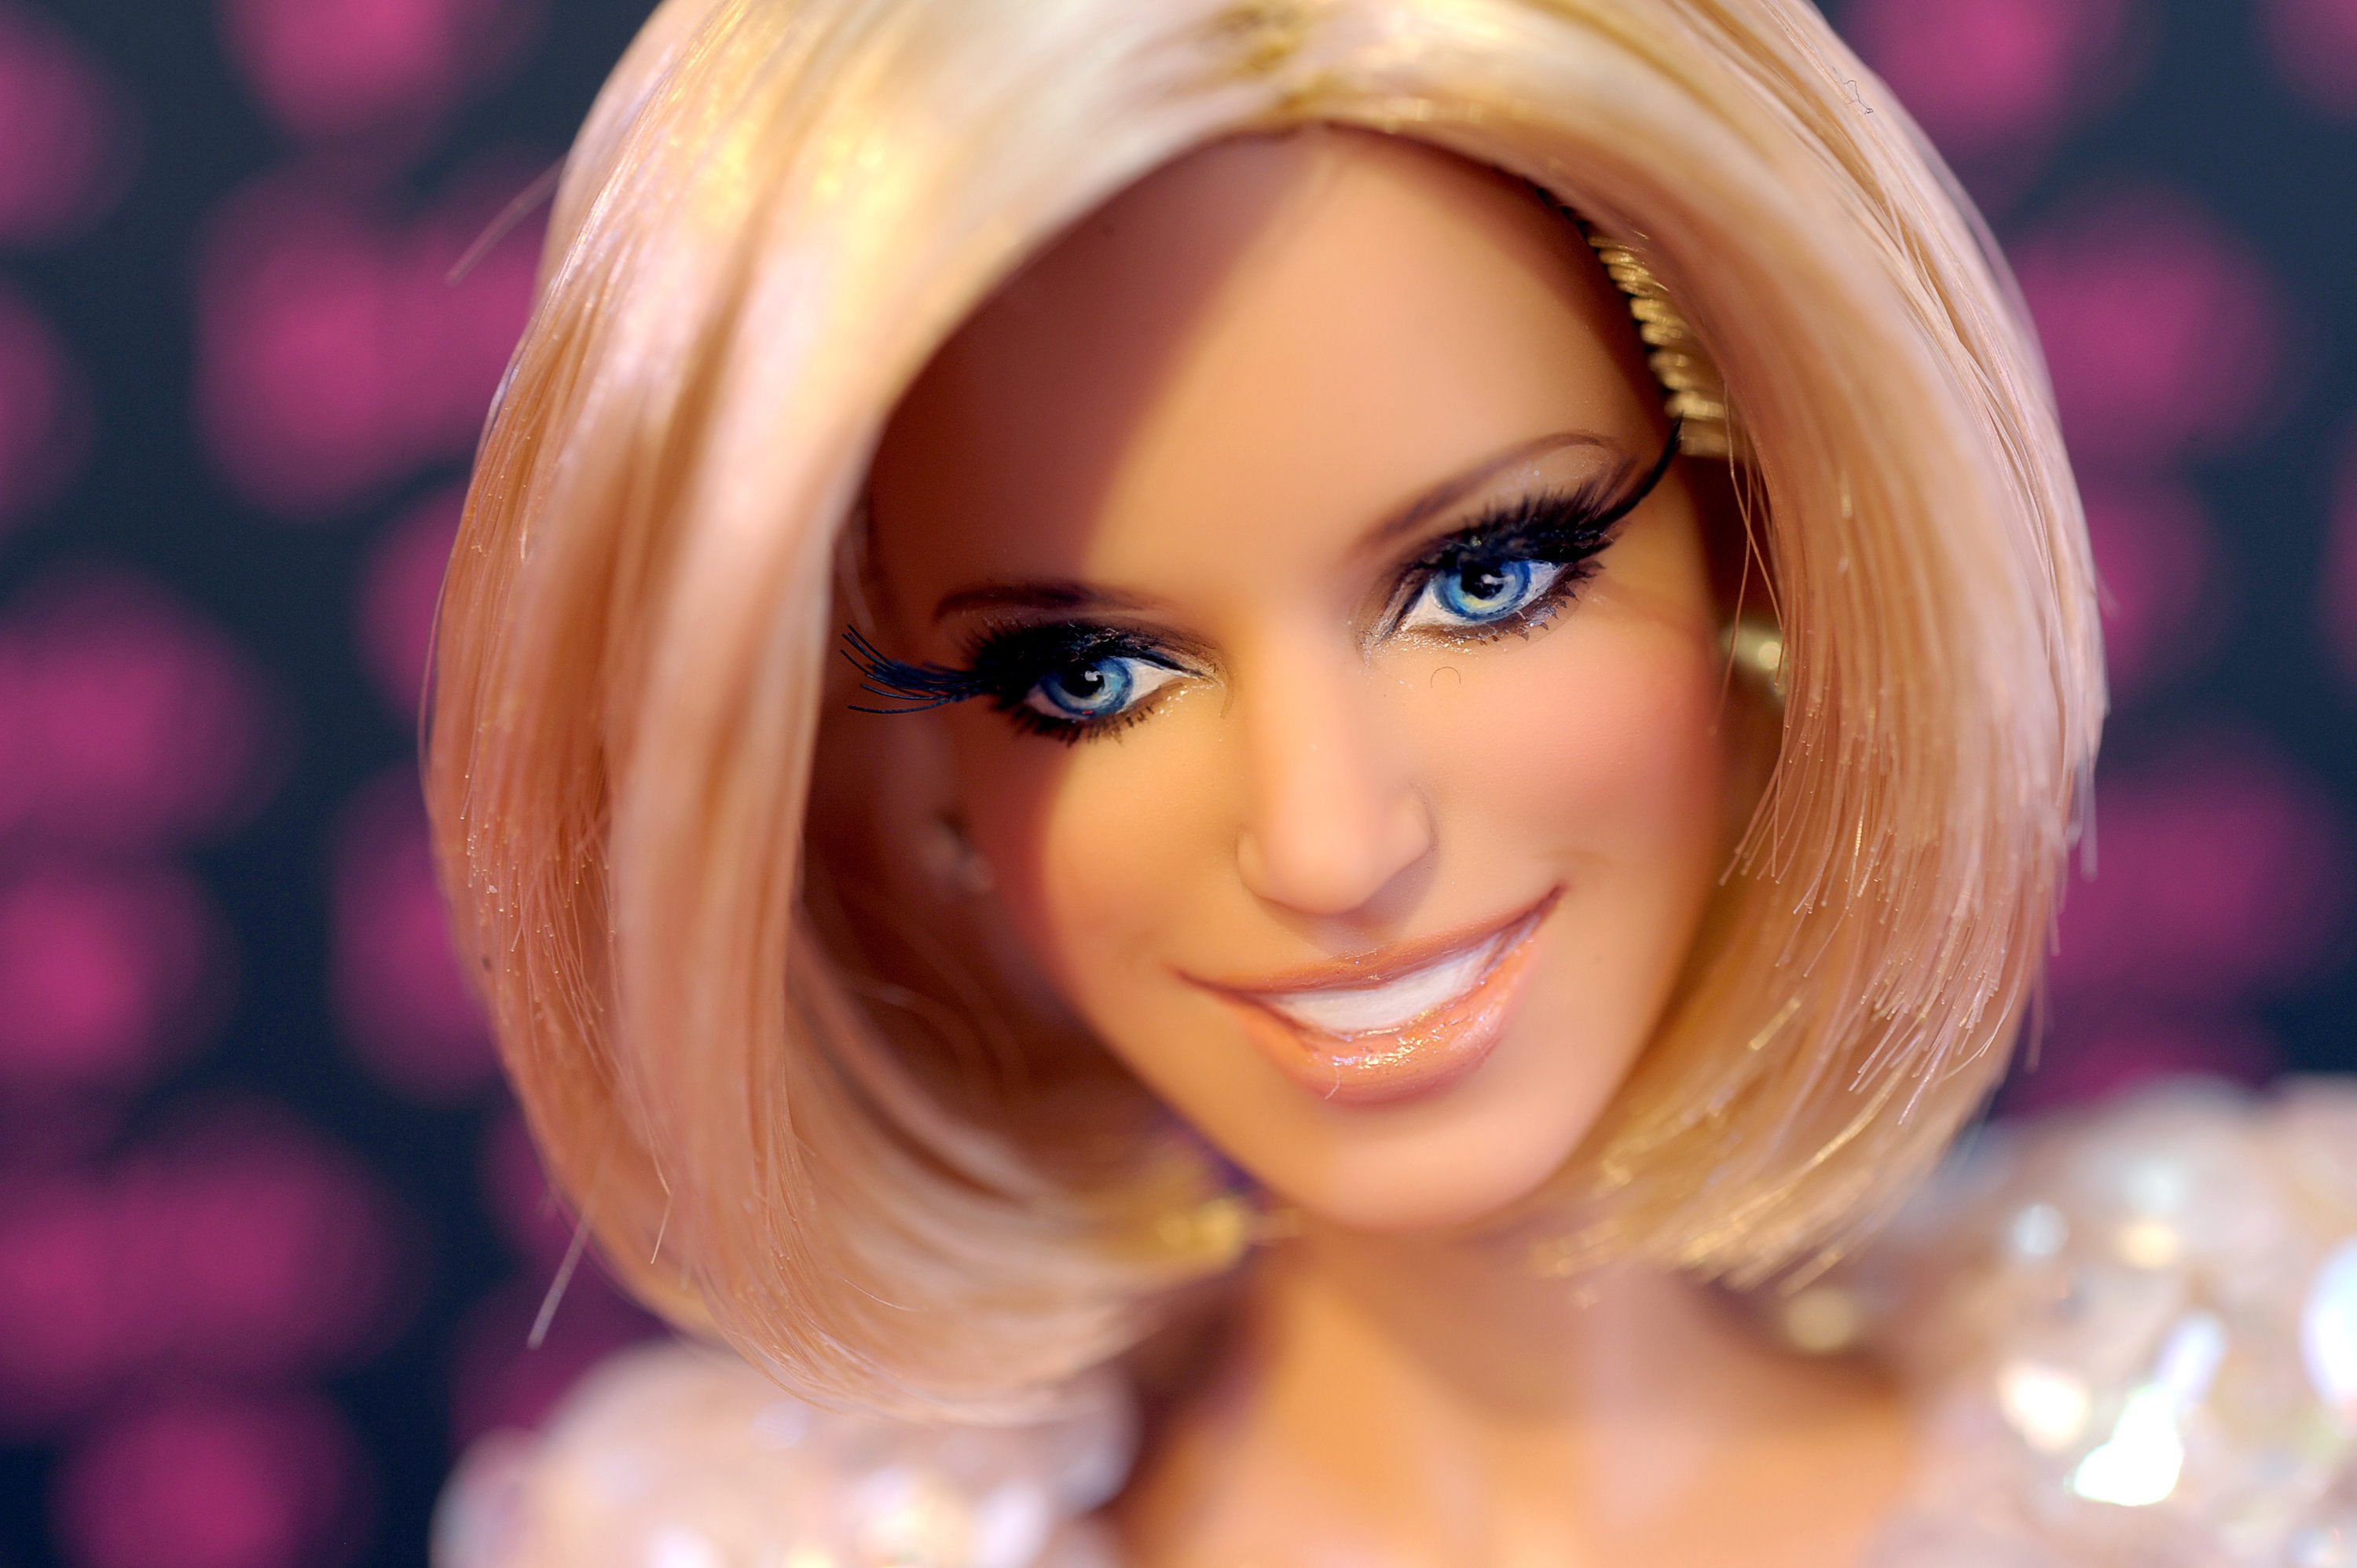 Mattel, de grootste speelgoedfabrikant ter wereld, heeft de wereldwijde omzet in het derde kwartaal met 6 procent opgevoerd tot 2,2 miljard dollar (1,6 miljard euro). Onder de streep bleef een winst van 423 miljoen dollar over, circa een vijfde meer dan een jaar eerder. Dat maakte het Amerikaanse bedrijf woensdag bekend. Mattel profiteerde vooral van een sterke vraag naar meisjesspeelgoed. Het poppenmerk American Girl realiseerde een omzetgroei van 20 procent en bij Barbie, het grootste merk van het speelgoedconcern, gingen de verkopen met 3 procent omhoog. De omzet van Fisher-Price bleef stabiel, terwijl die van Hot Wheels met 2 procent daalde. Topman Bryan Stockton zei in een toelichting dat Mattel in alle regio's is gegroeid. De sterkste toename kwam evenwel uit het buitenland. In Noord-Amerika, de grootste markt voor Mattel, bleef de omzetgroei met 3 procent relatief beperkt. De Europese omzet steeg met 13 procent, vooral dankzij een sterk groei in Rusland en andere opkomende markten in Oost-Europa. Maar ook in kernlanden als Duitsland en Frankrijk namen de verkopen toe. De inkomsten in Latijns-Amerika en Azië stegen in de lokale valuta's ook met dubbele cijfers, maar door de sterke waardedalingen van de betreffende munten, bleef daar in dollars veel minder van over.